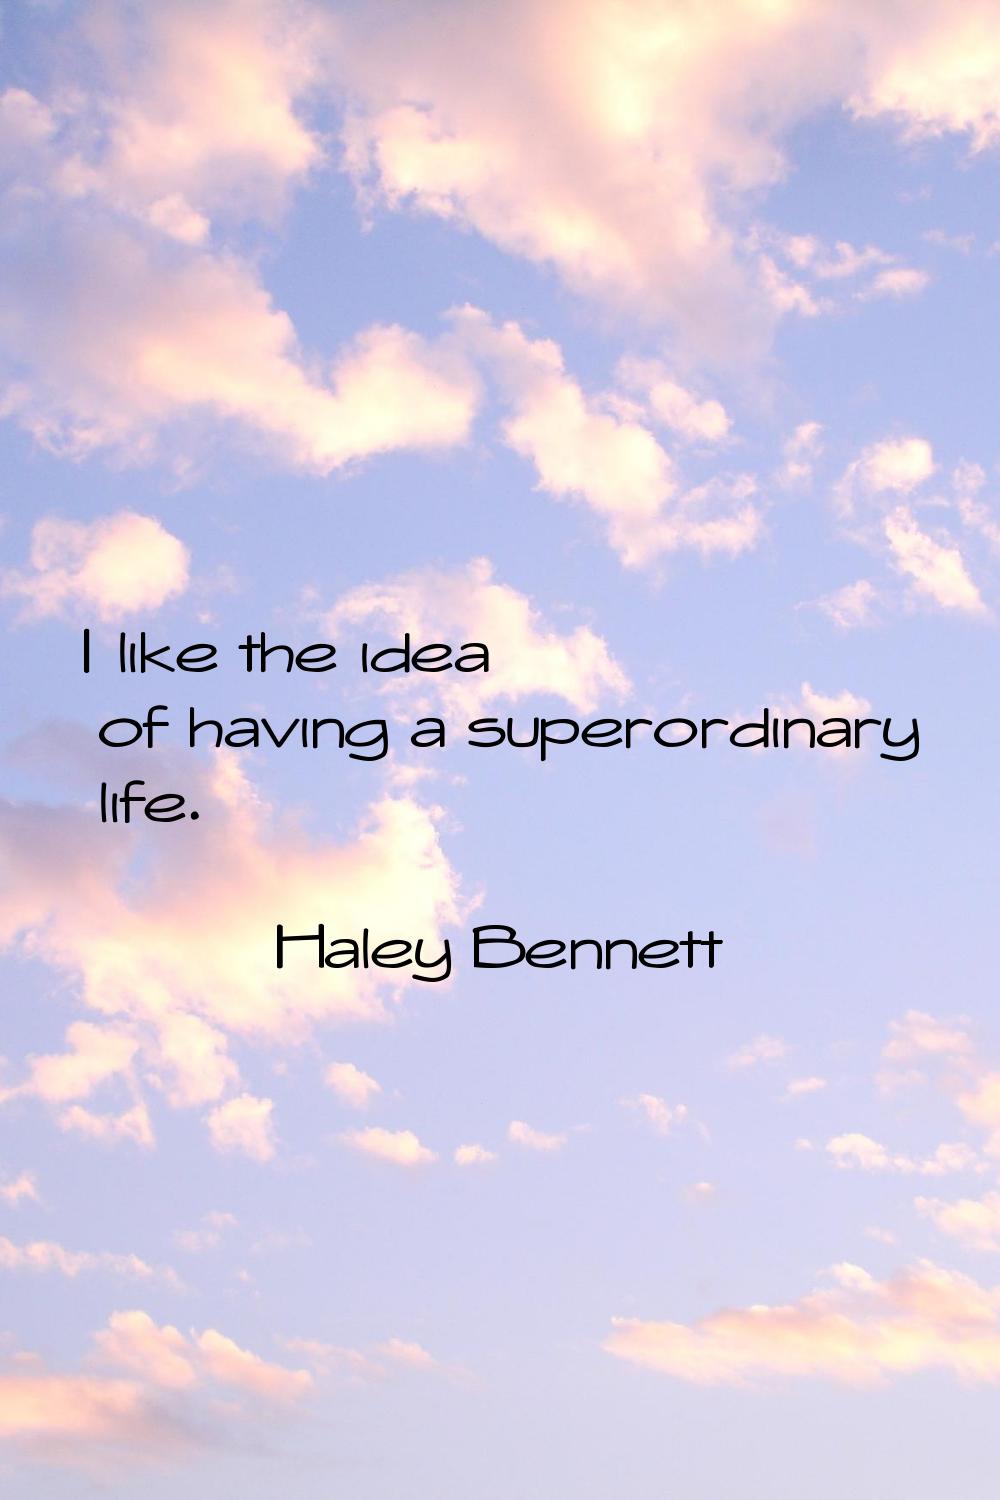 I like the idea of having a superordinary life.